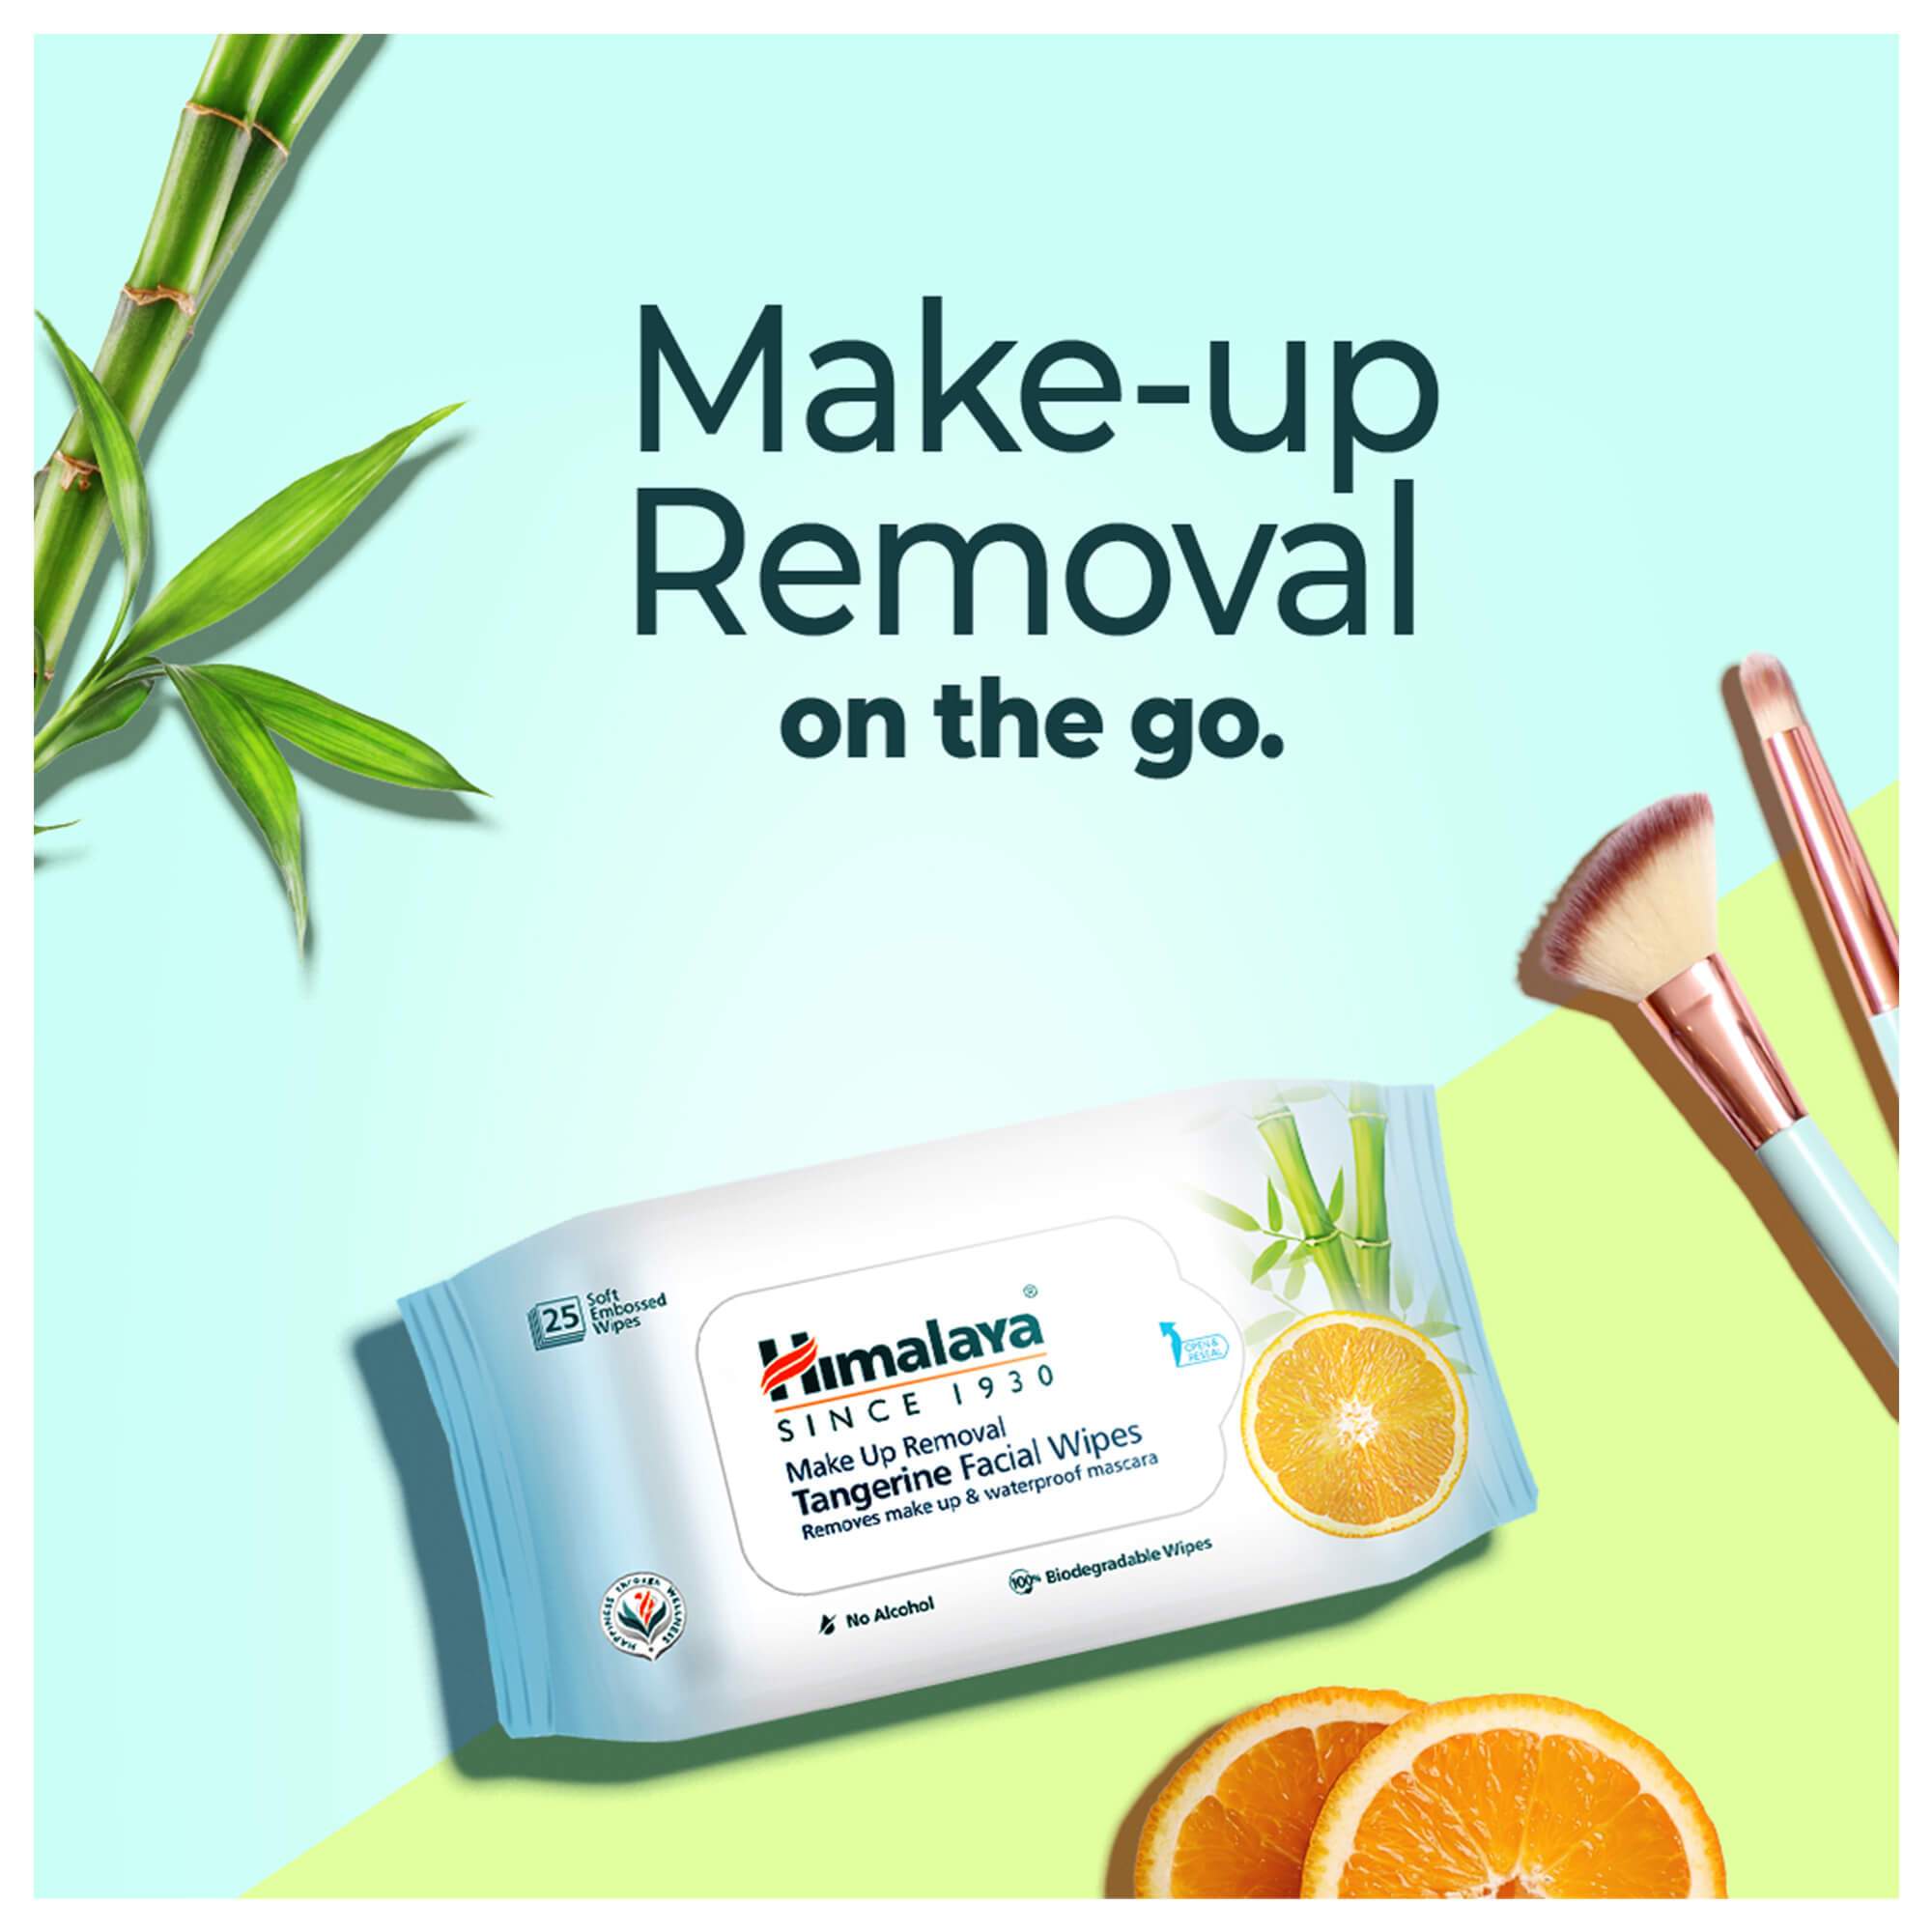 Himalaya Makeup Removal Tangerine Facial Wipes